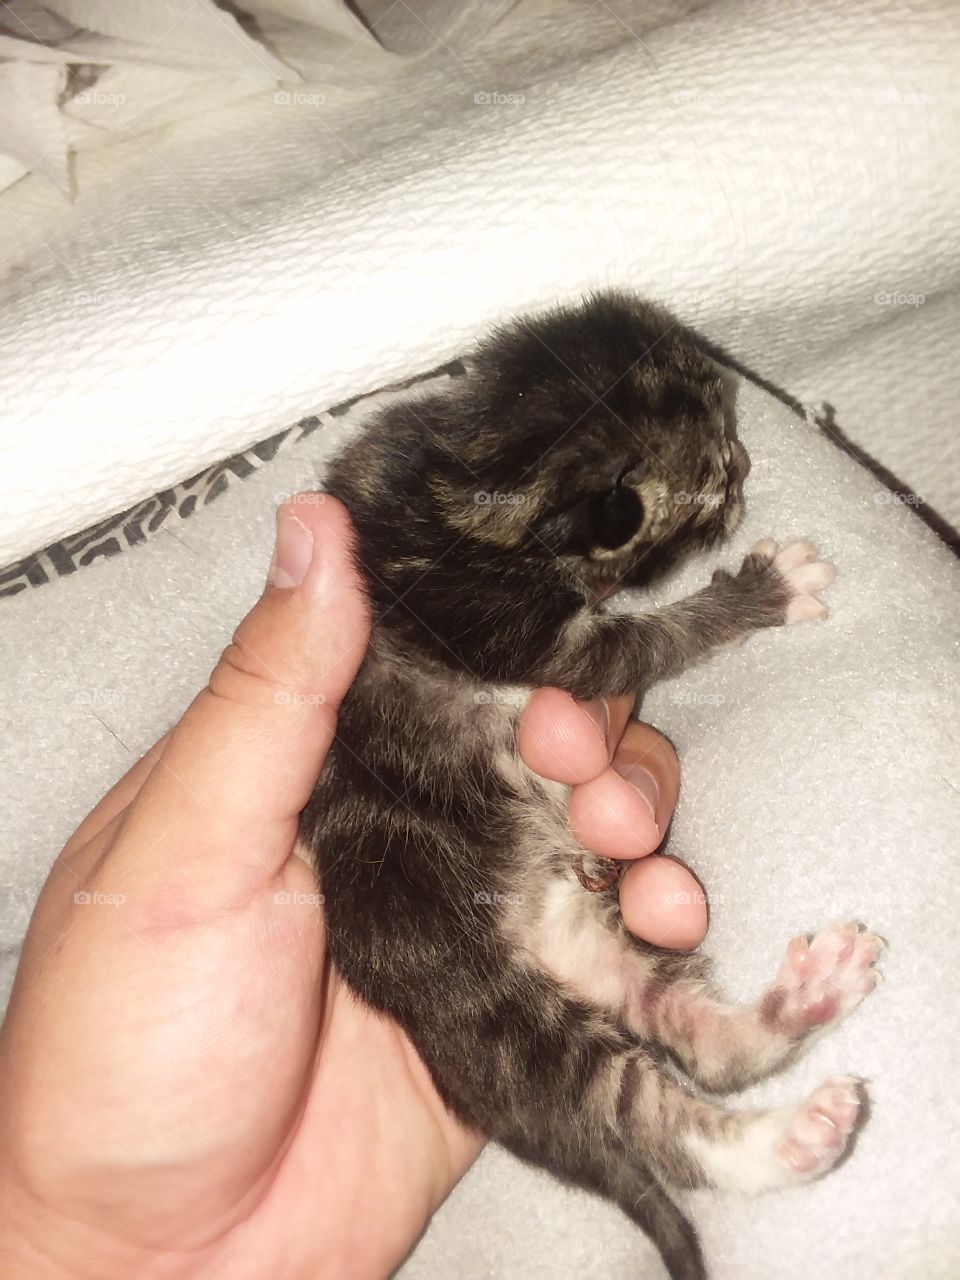 Baby Kitten just born